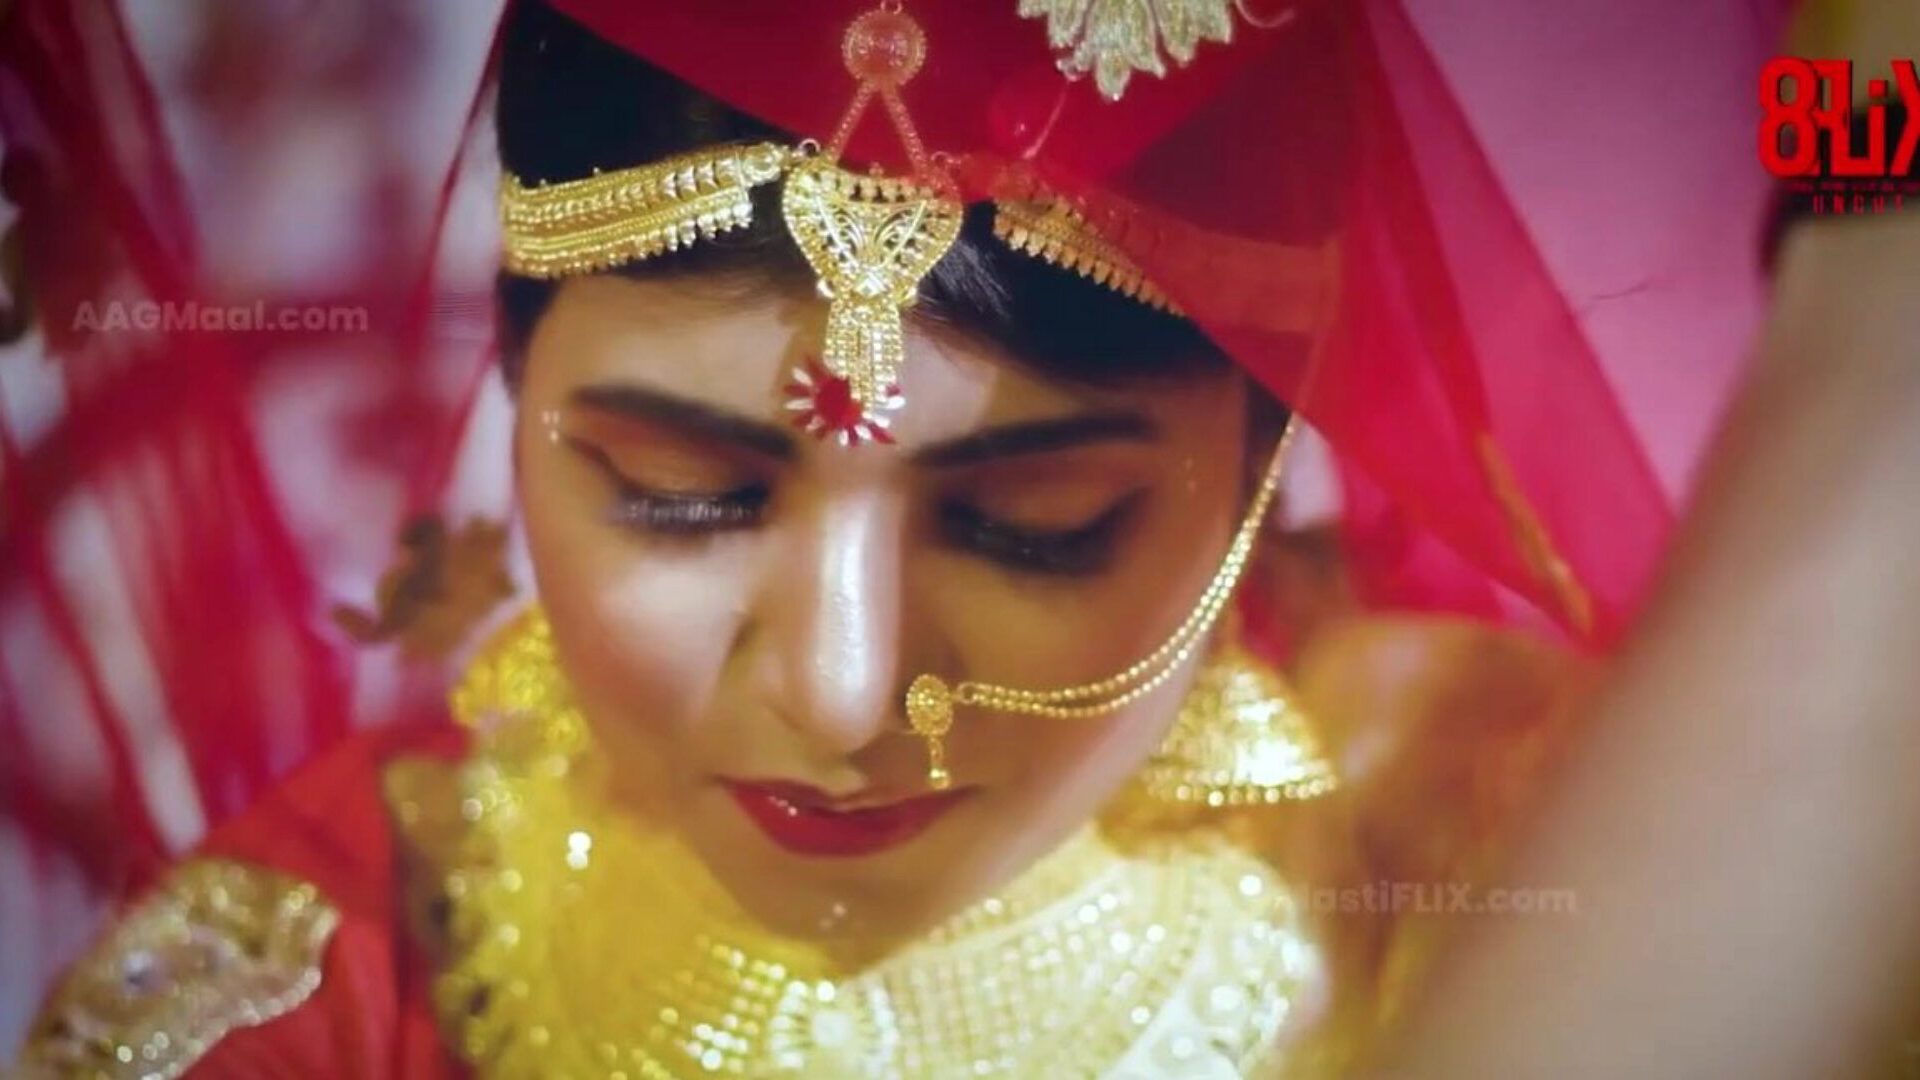 свадьба bebo без купюр - новый уровень индийского веб-сериала